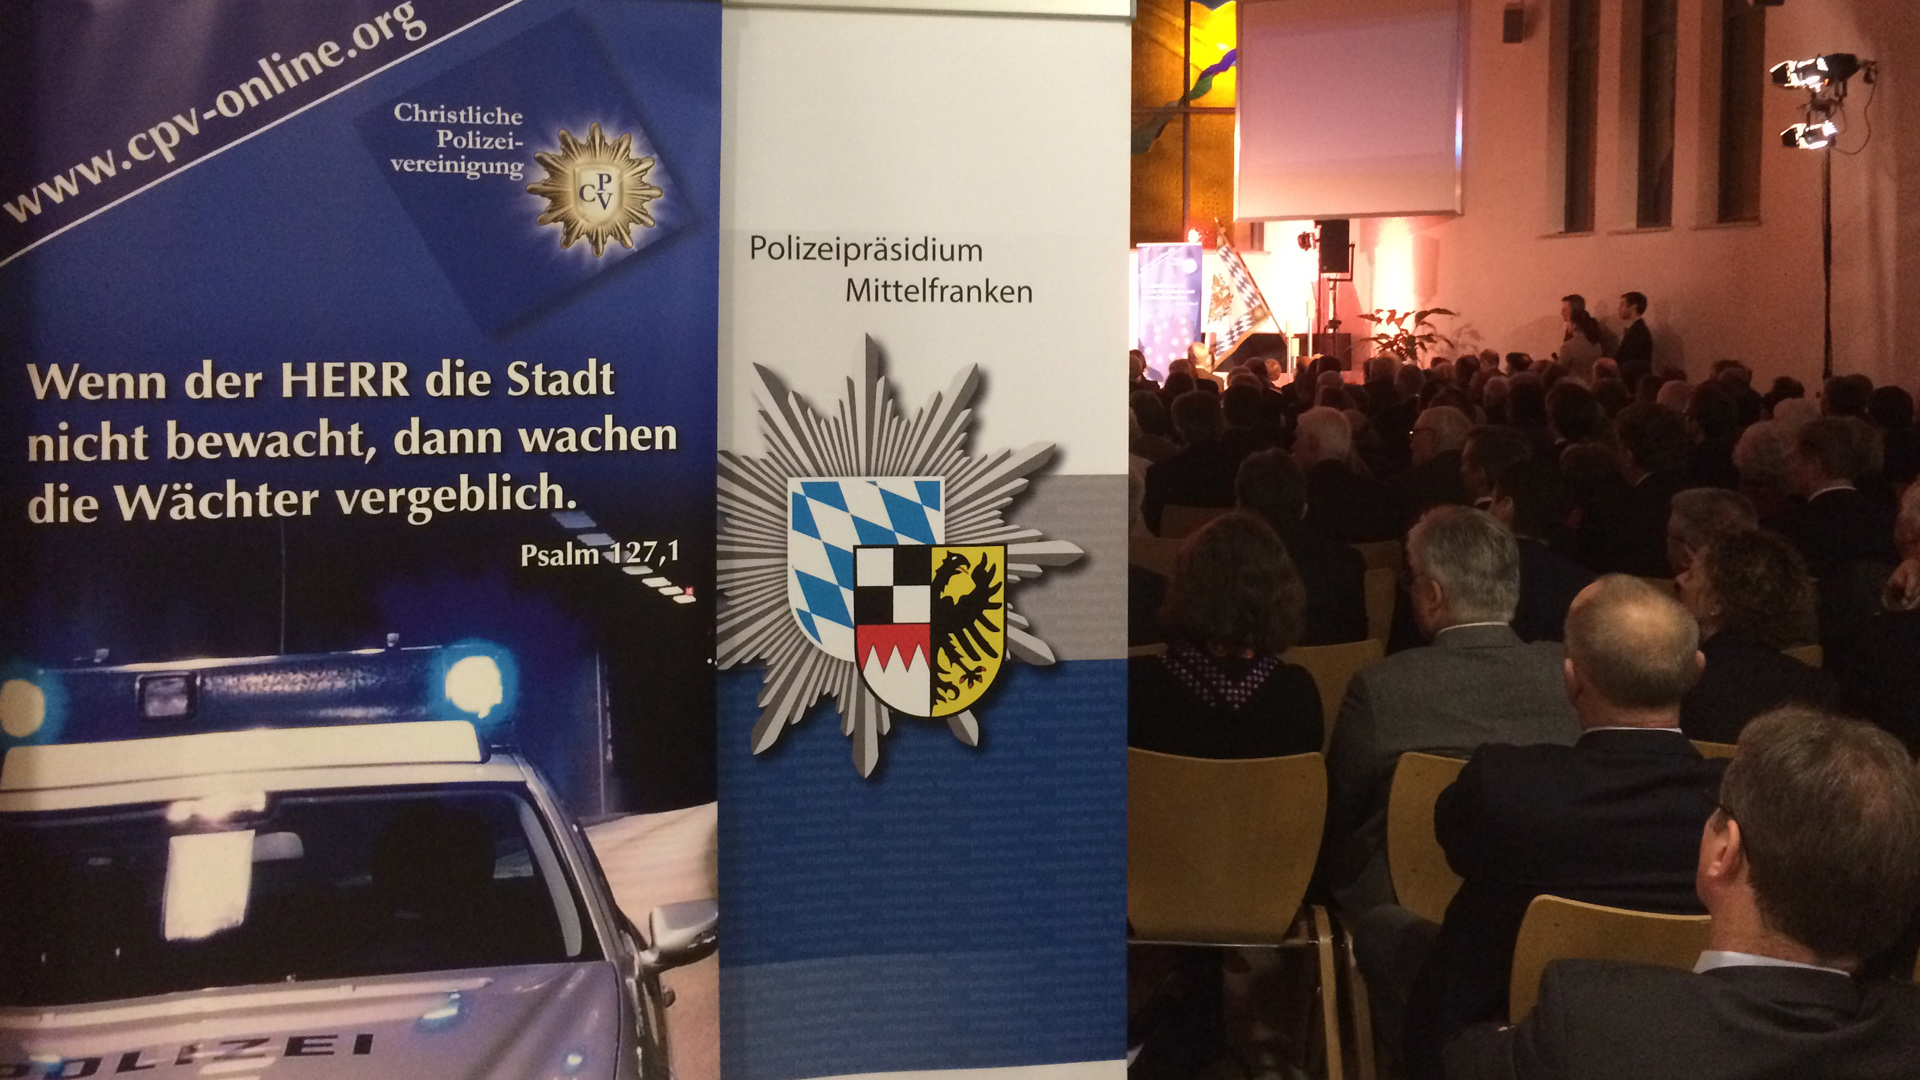 Zum Jahresempfang der Christlichen Polizeivereinigung kamen hunderte Besucher in ein Nürnberger Gemeindezentrum